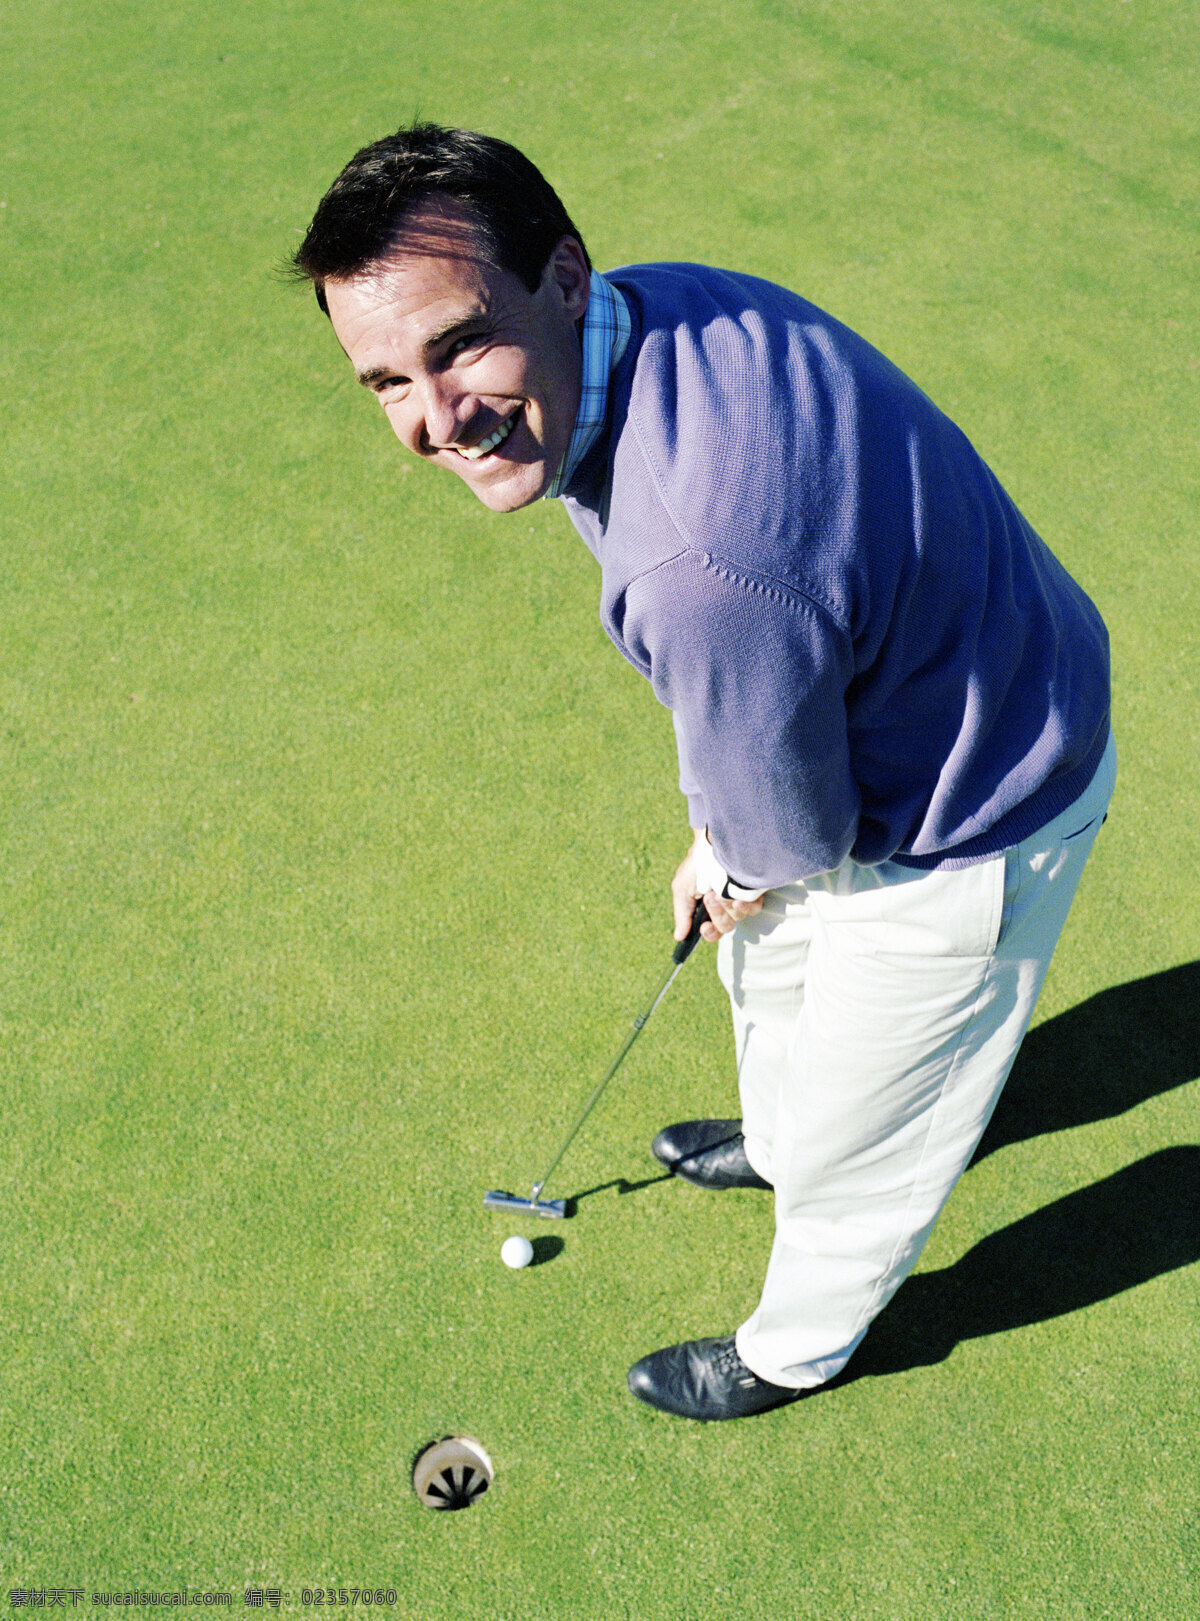 高尔夫球 微笑 男人 打高尔夫球 高尔夫球杆 高尔夫球场 贵族运动 休闲运动 尊贵运动 男性 外国人物 体育运动 生活百科 绿色